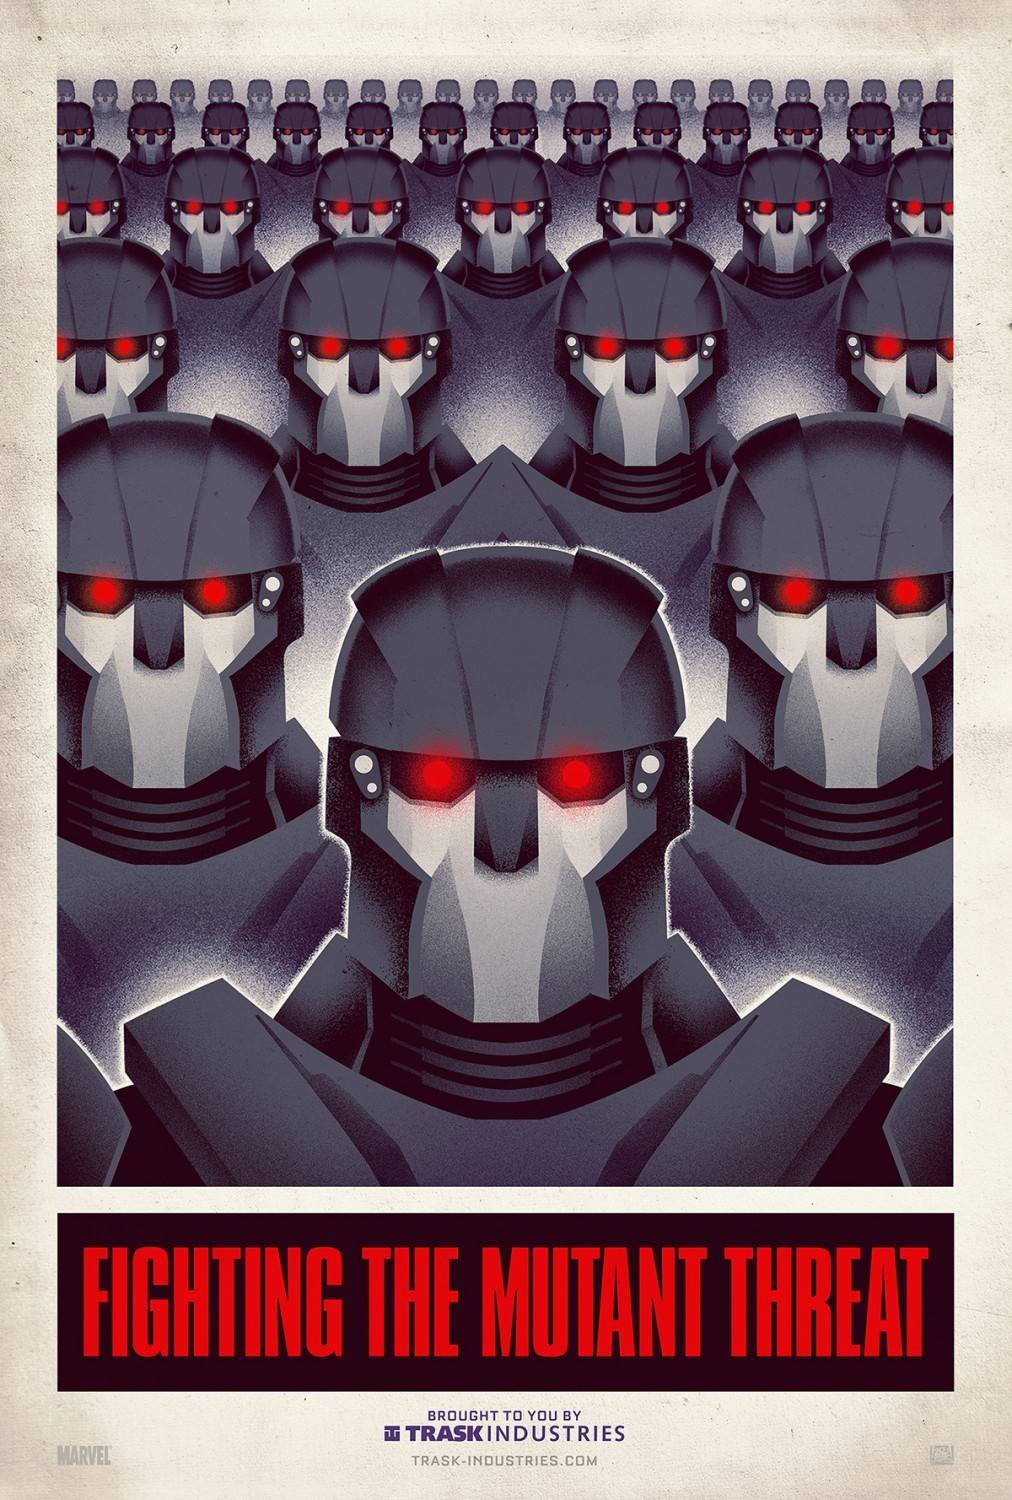 Люди Икс: Дни минувшего будущего: постер N64252